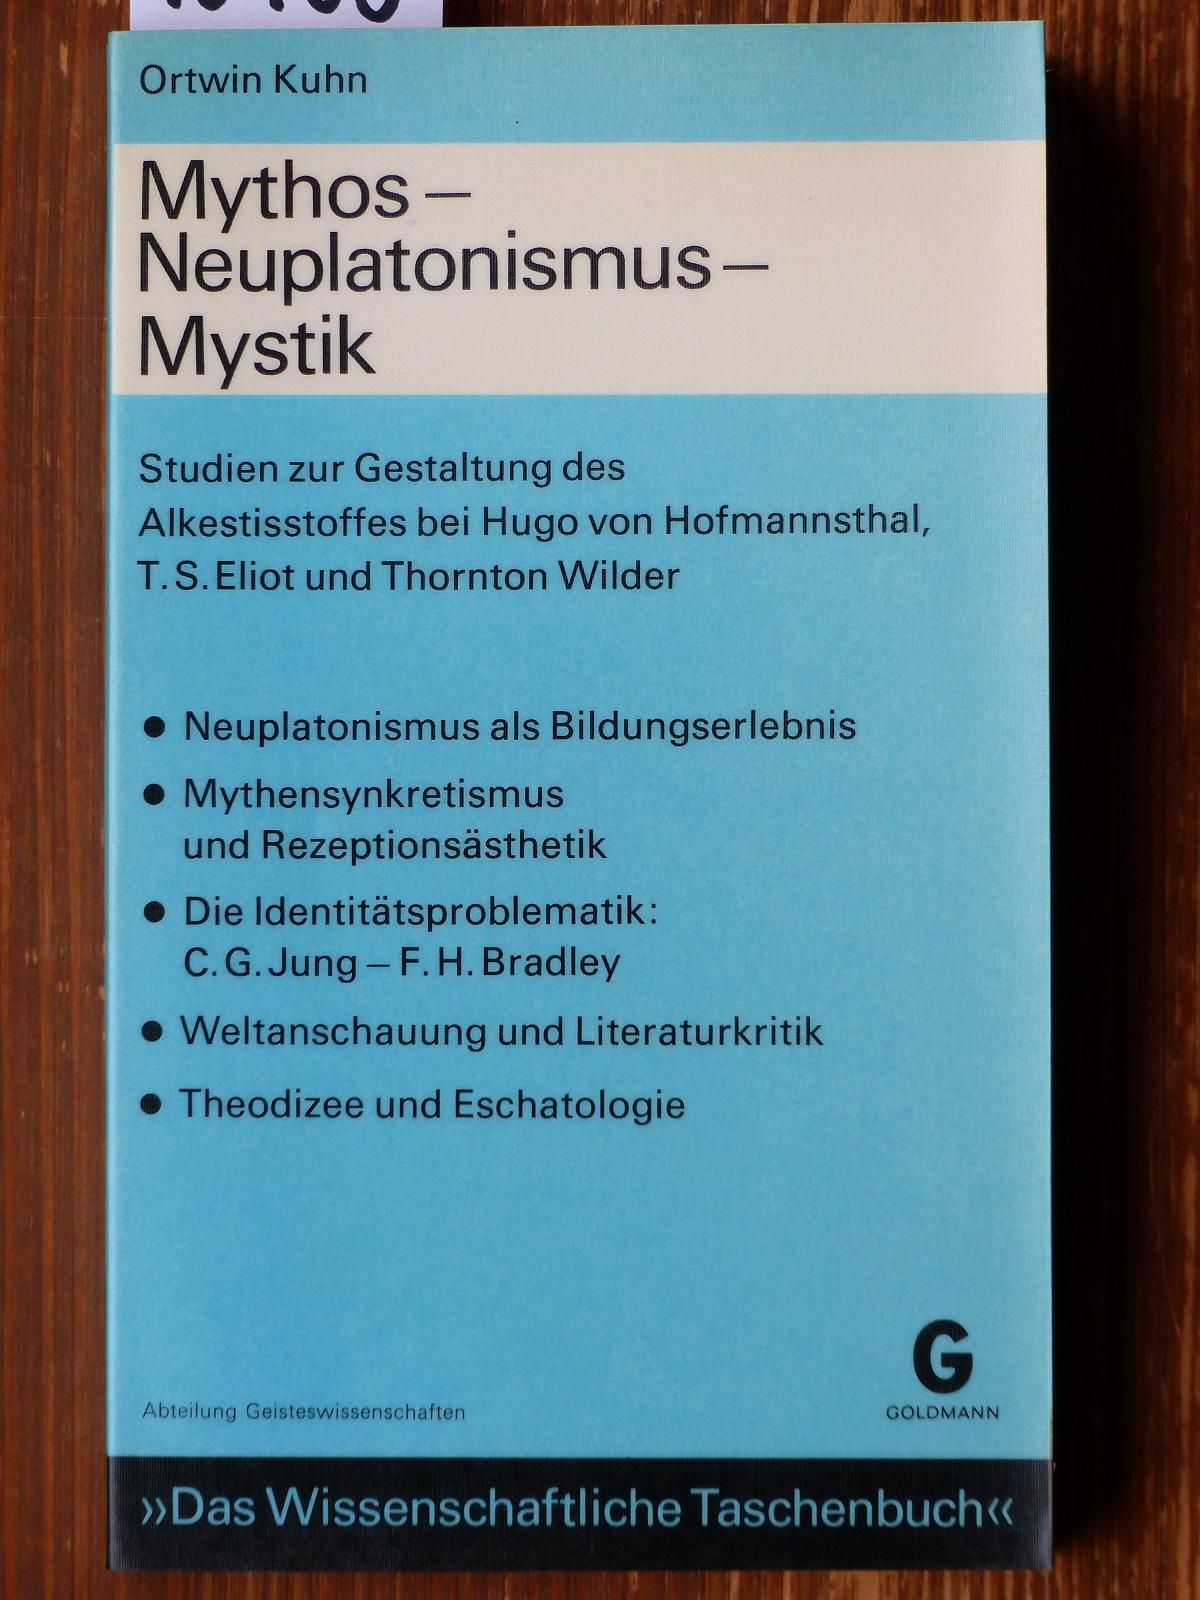 Mythos - Neuplatonismus - Mystik. Studien zur Gestaltung des Alkestisstoffes bei Hugo von Hofmannsthal, T. S. Eliot u. Thornton Wilder. - Kuhn, Ortwin